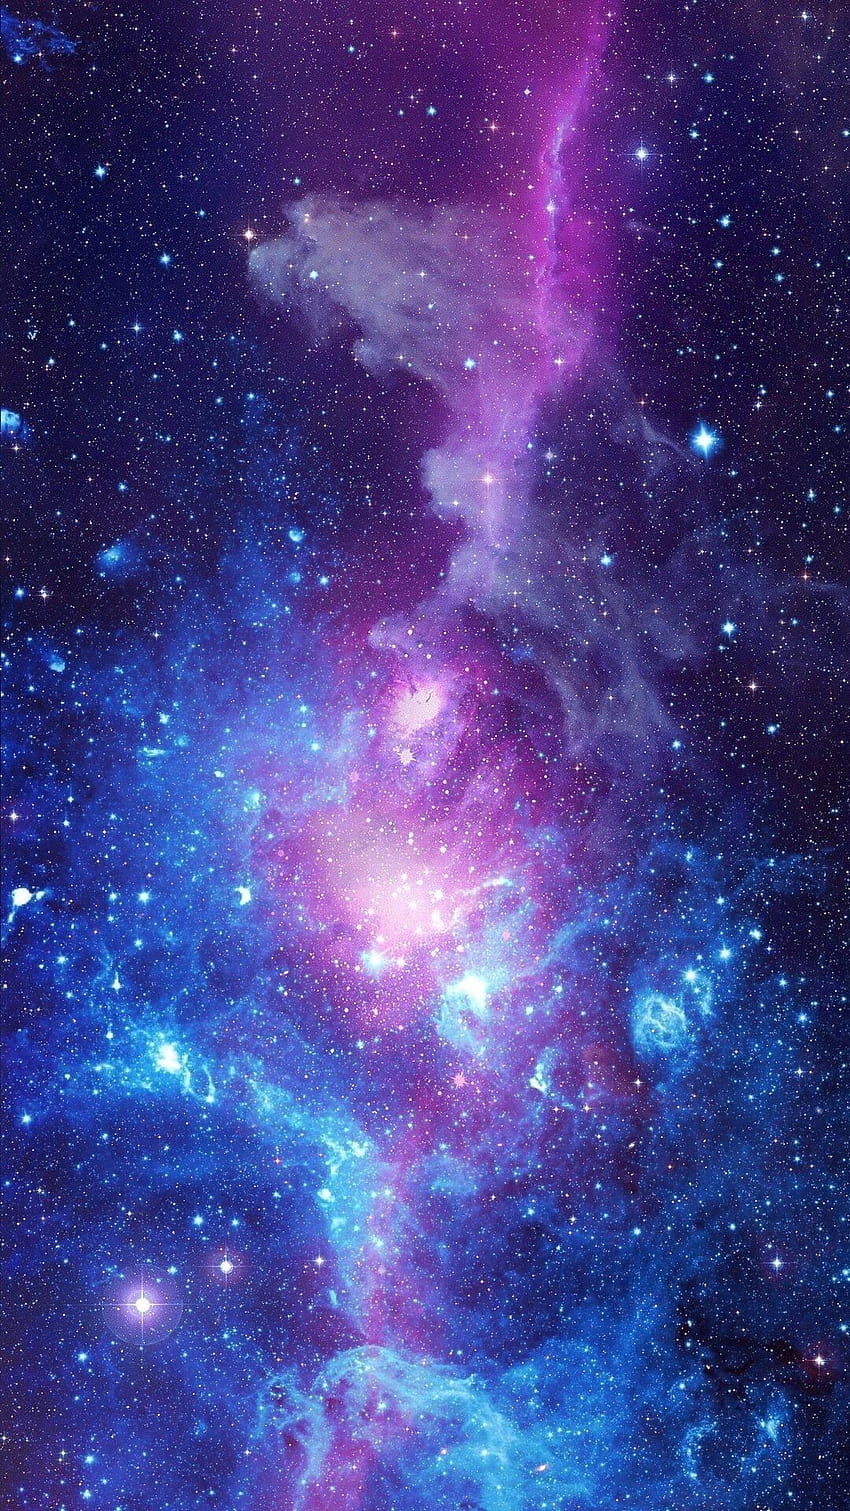 Cảm nhận cảm giác như đang lạc vào không gian phiêu lưu đầy mơ mộng với hình nền galaxy. Hình ảnh vô cùng độc đáo với những vệt sáng lấp lánh, những chòm sao tuyệt đẹp và những quả cầu thiên hà đầy bí ẩn. Hãy để cho tâm trí được thư giãn trong không gian rộng lớn và sự tuyệt vời của vũ trụ.